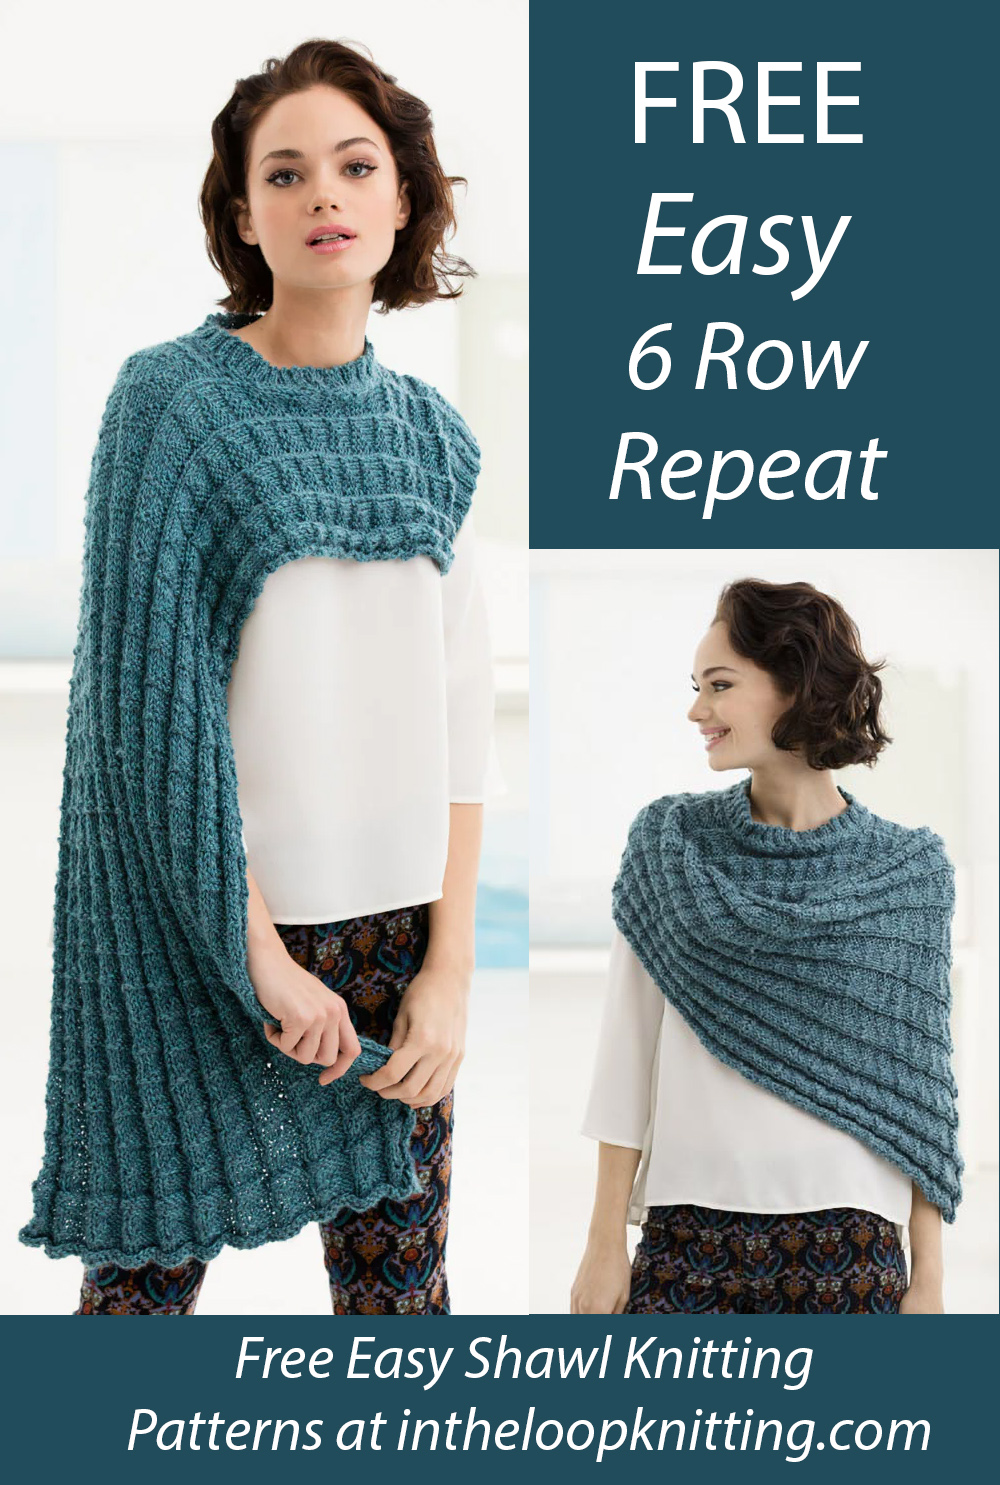 Free Easy Shawl Knitting Pattern Karin's Wrap